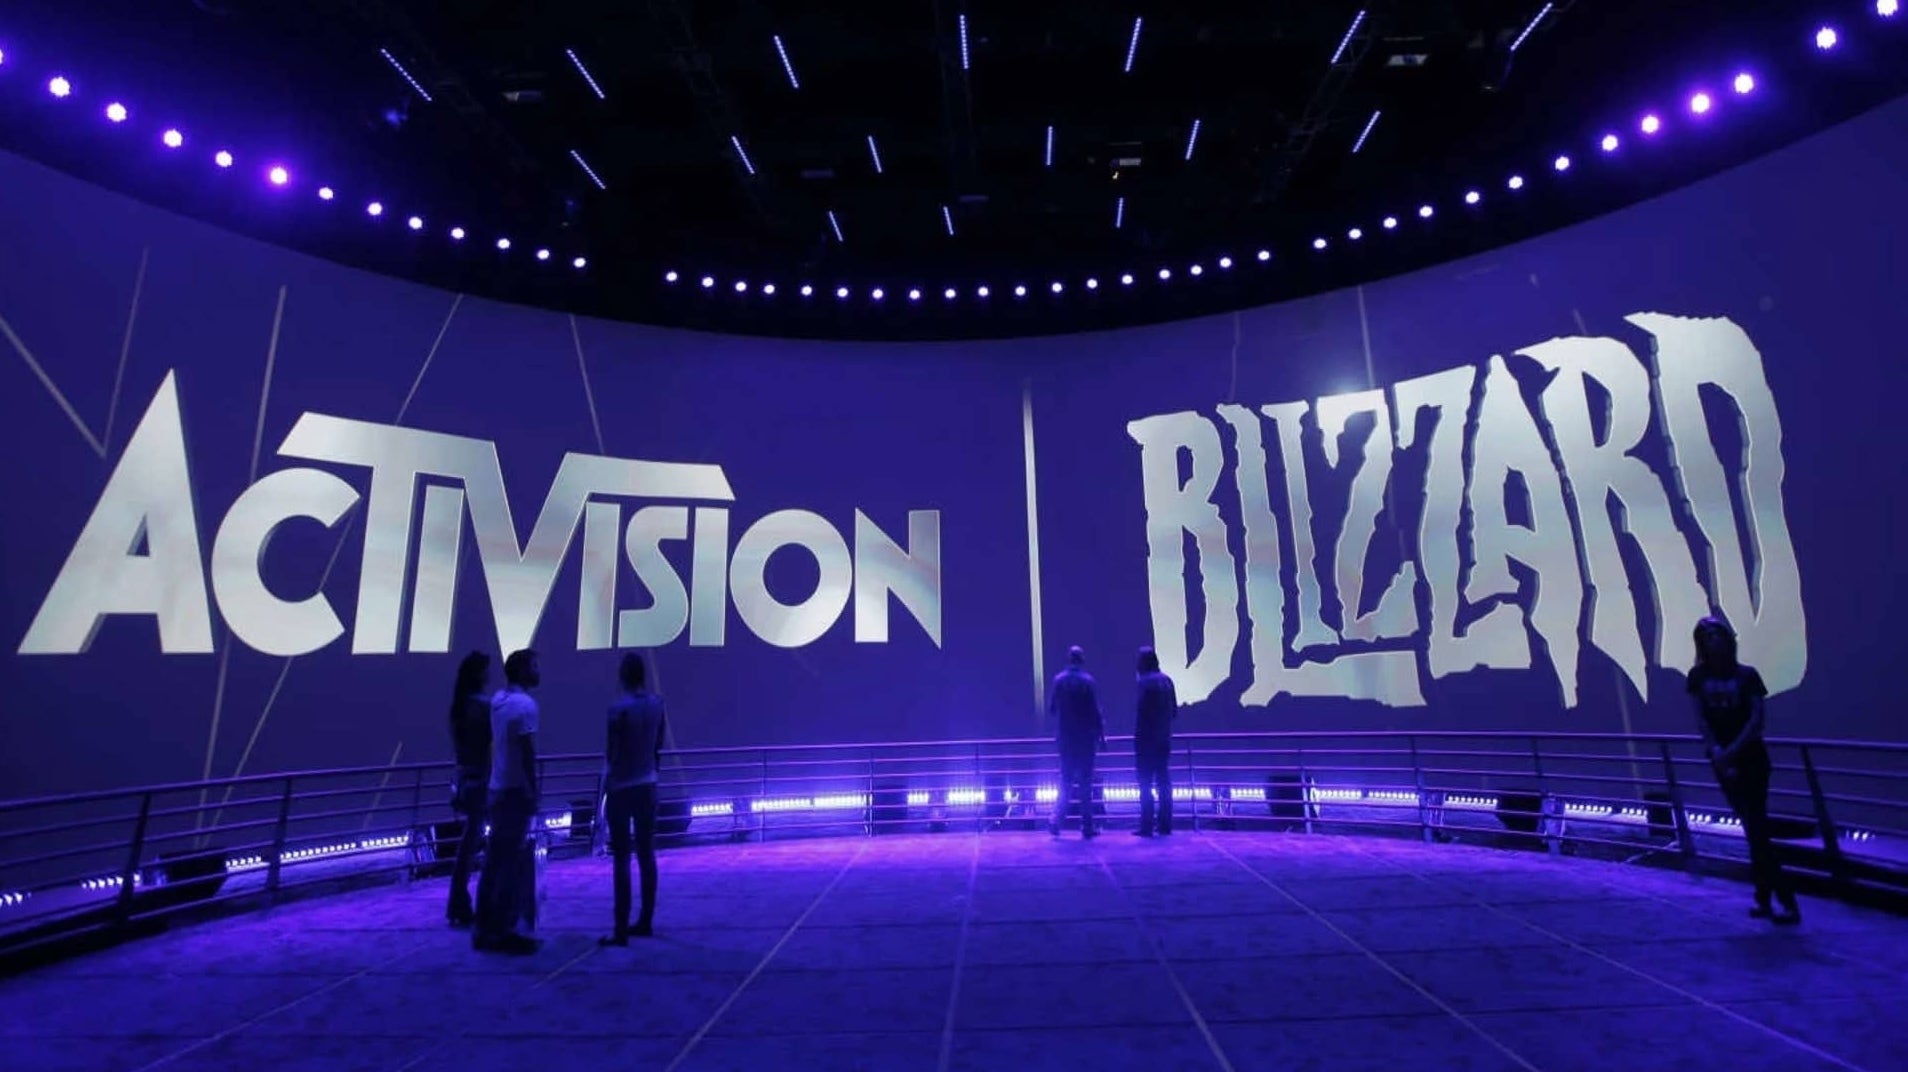 Immagine di Activision Blizzard ennesima causa legale su discriminazioni: accordo da $18 milioni con la Federal Employment Agency